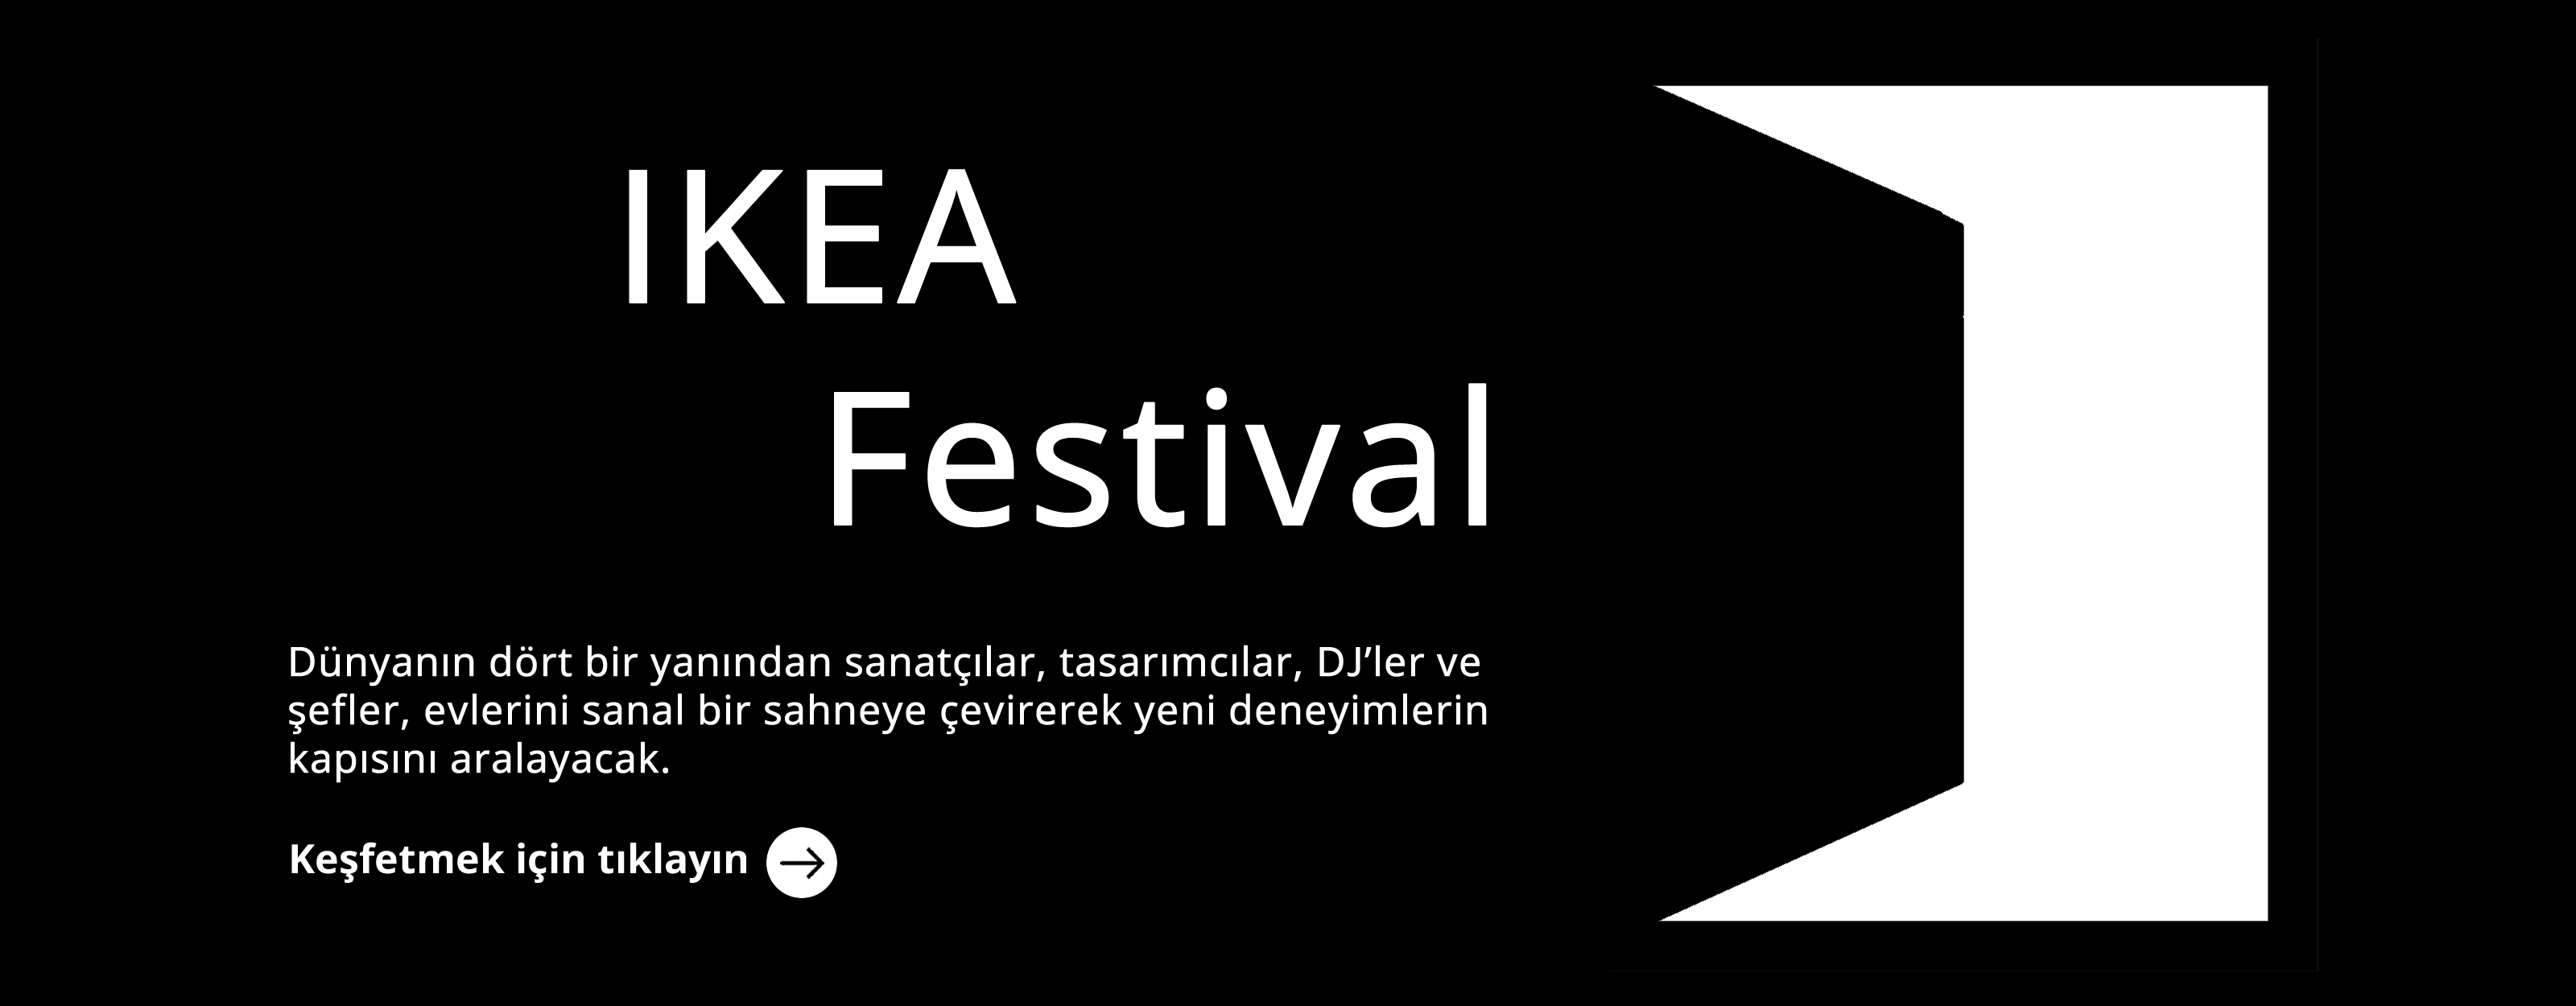 IKEA festival